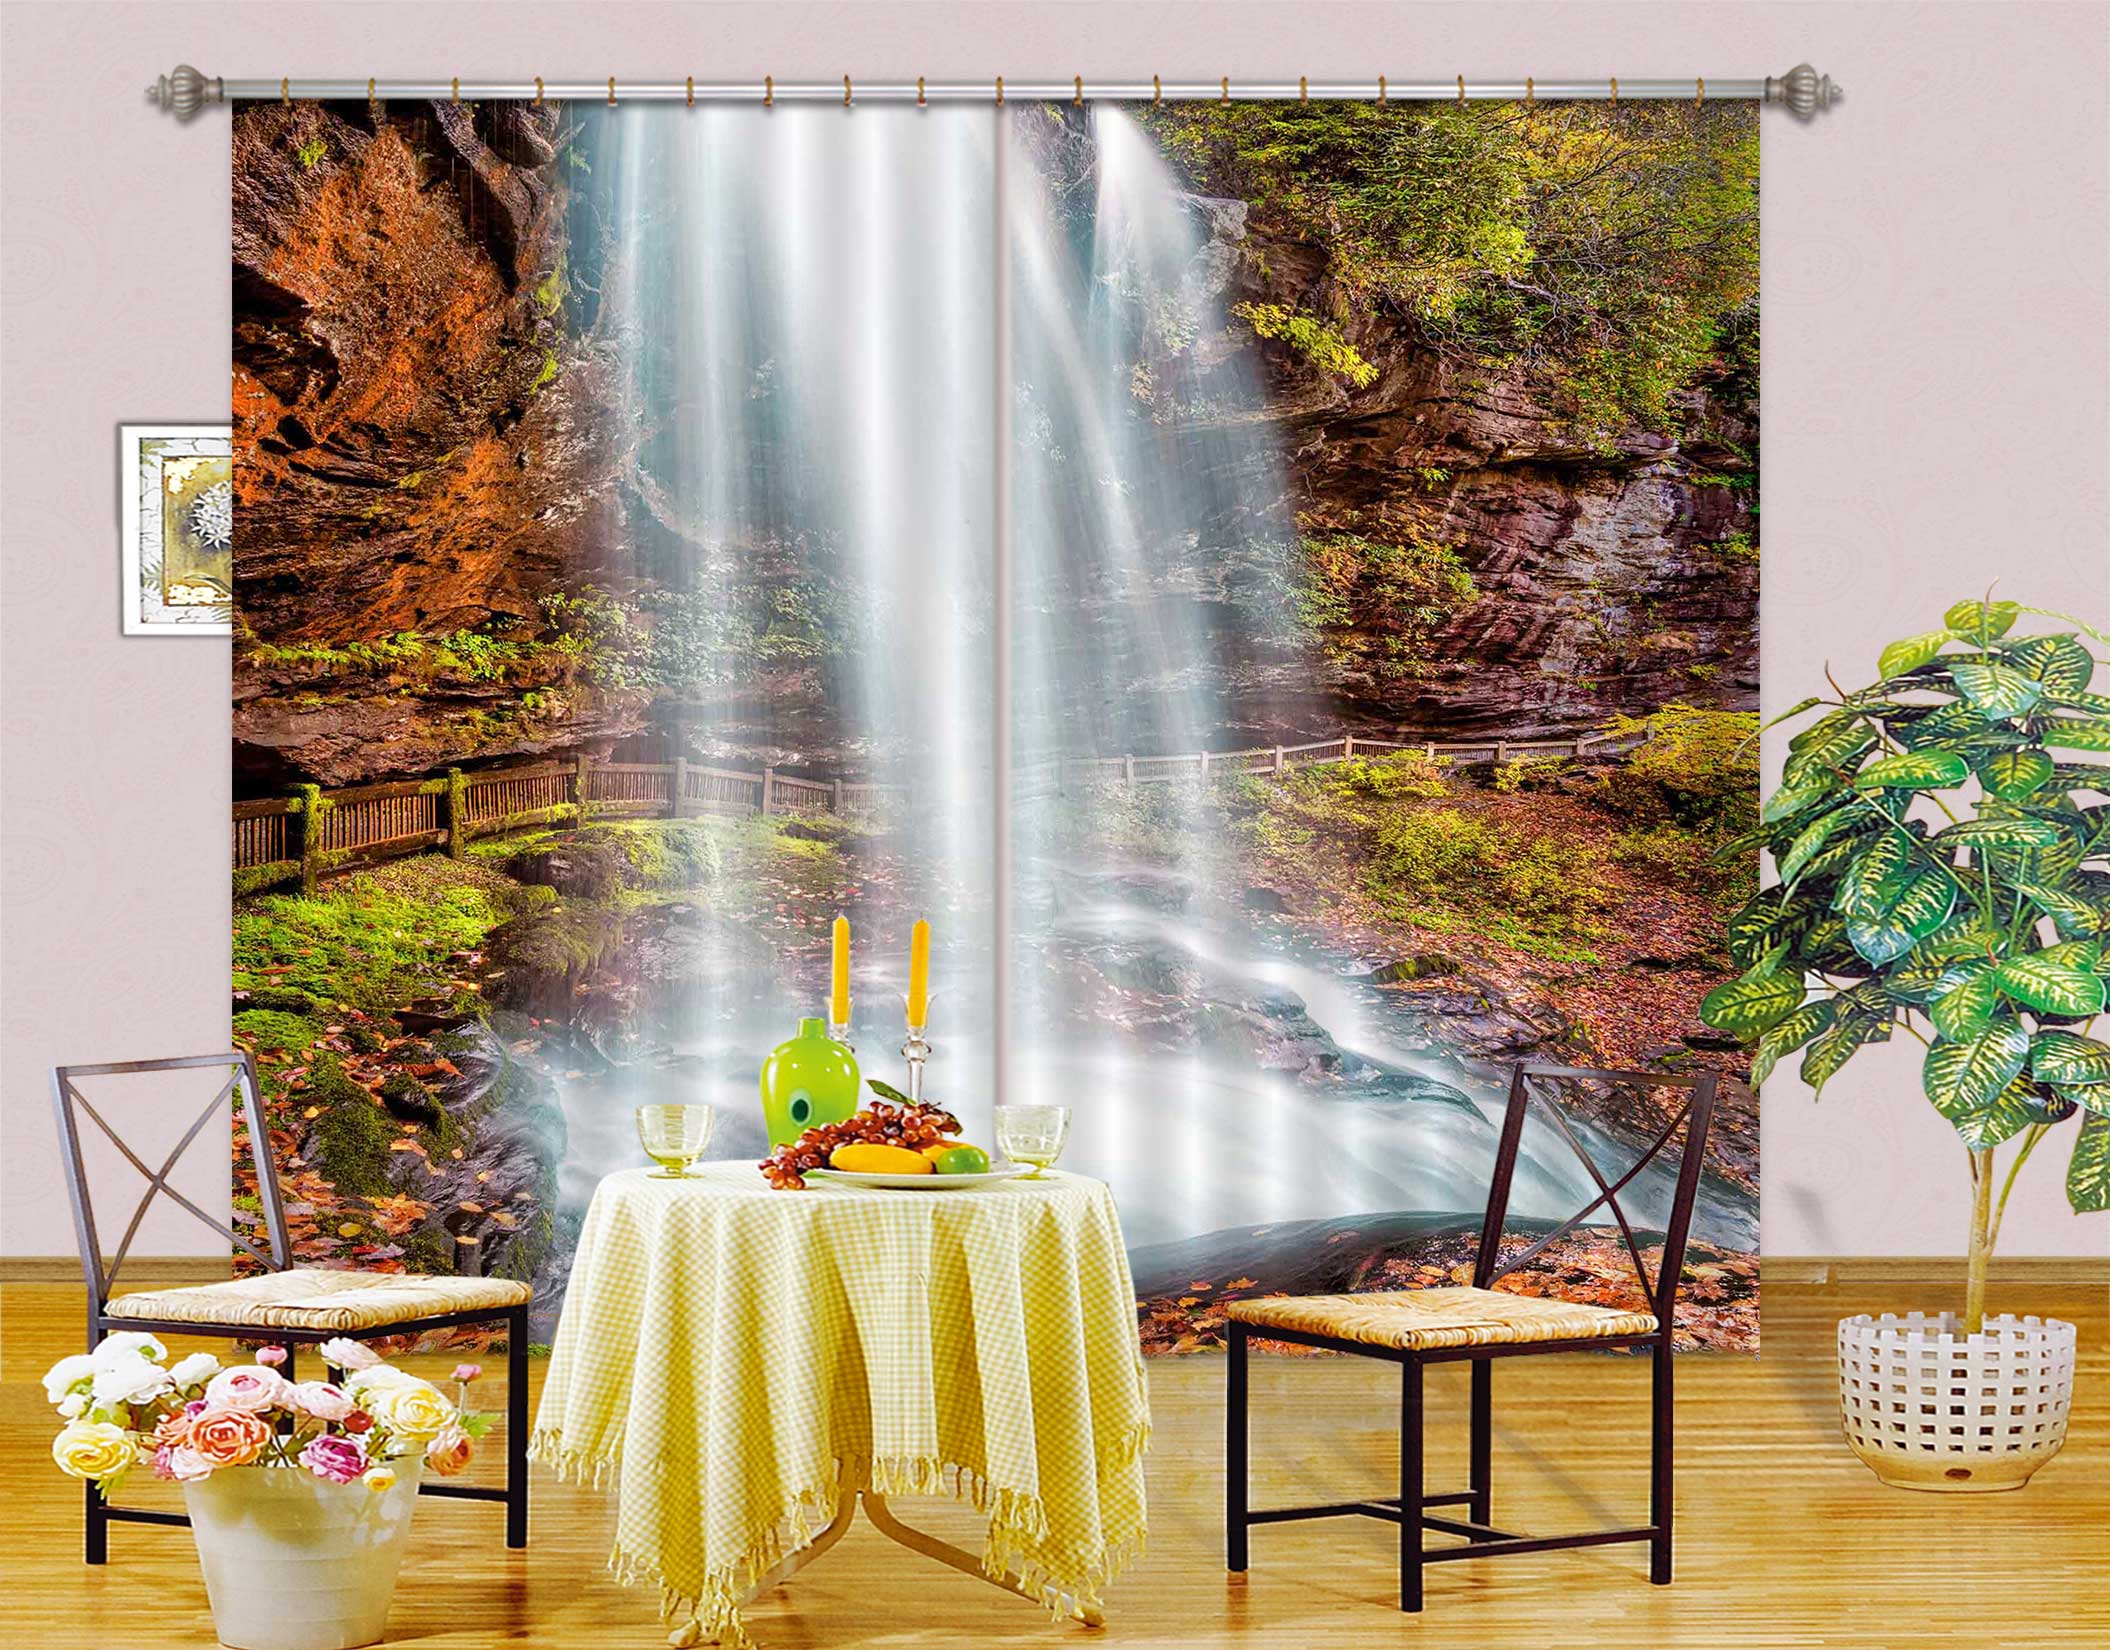 3D Waterfall Rock 5356 Beth Sheridan Curtain Curtains Drapes